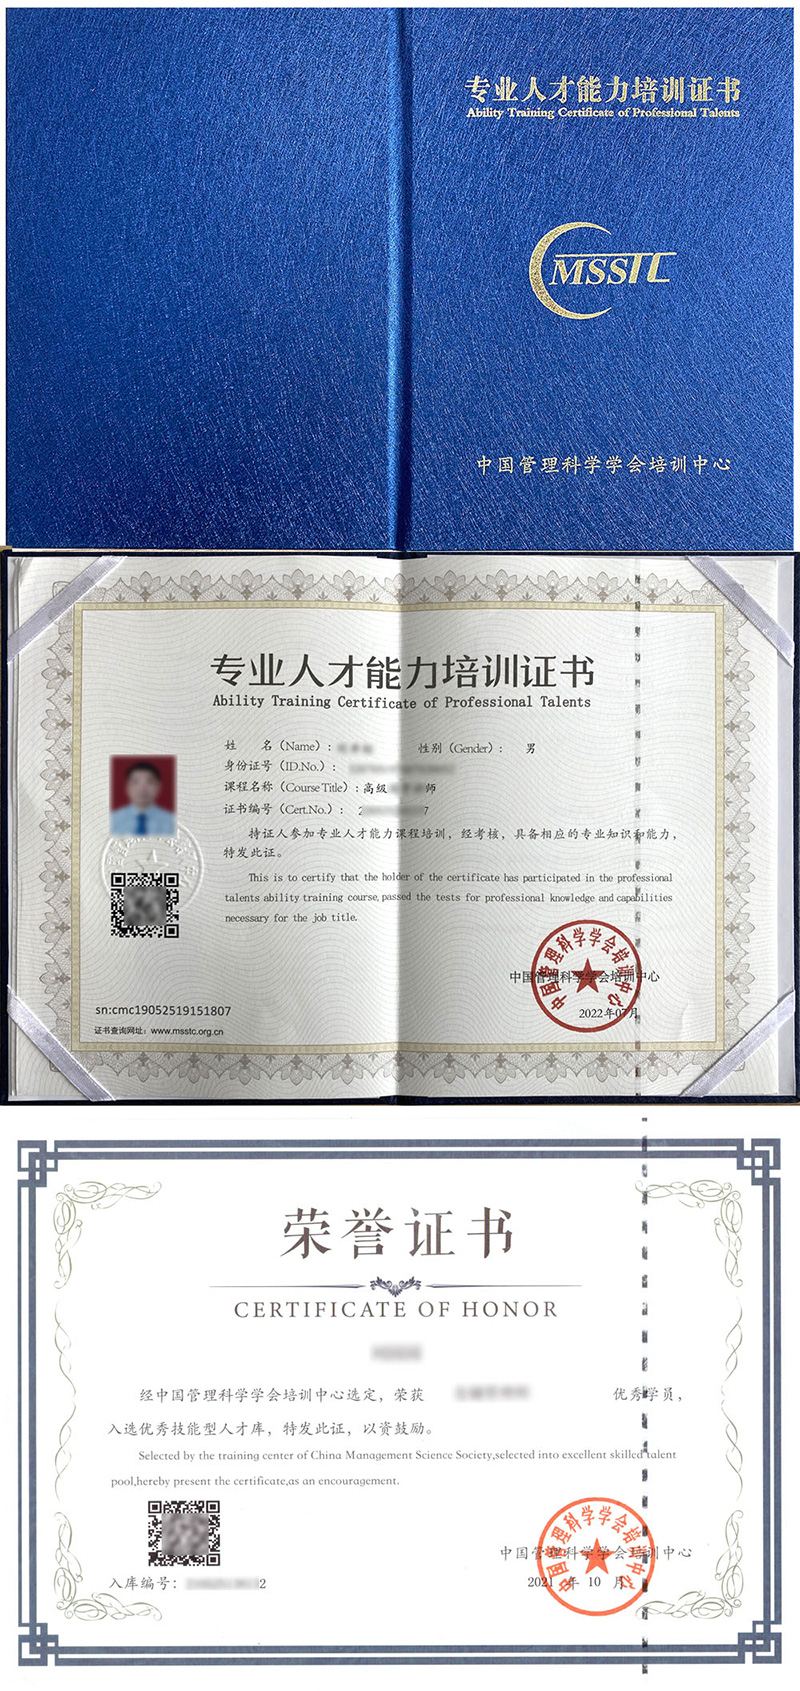 中国管理科学学会培训中心 专业人才能力培训证书 心理危机干预师证证书样本